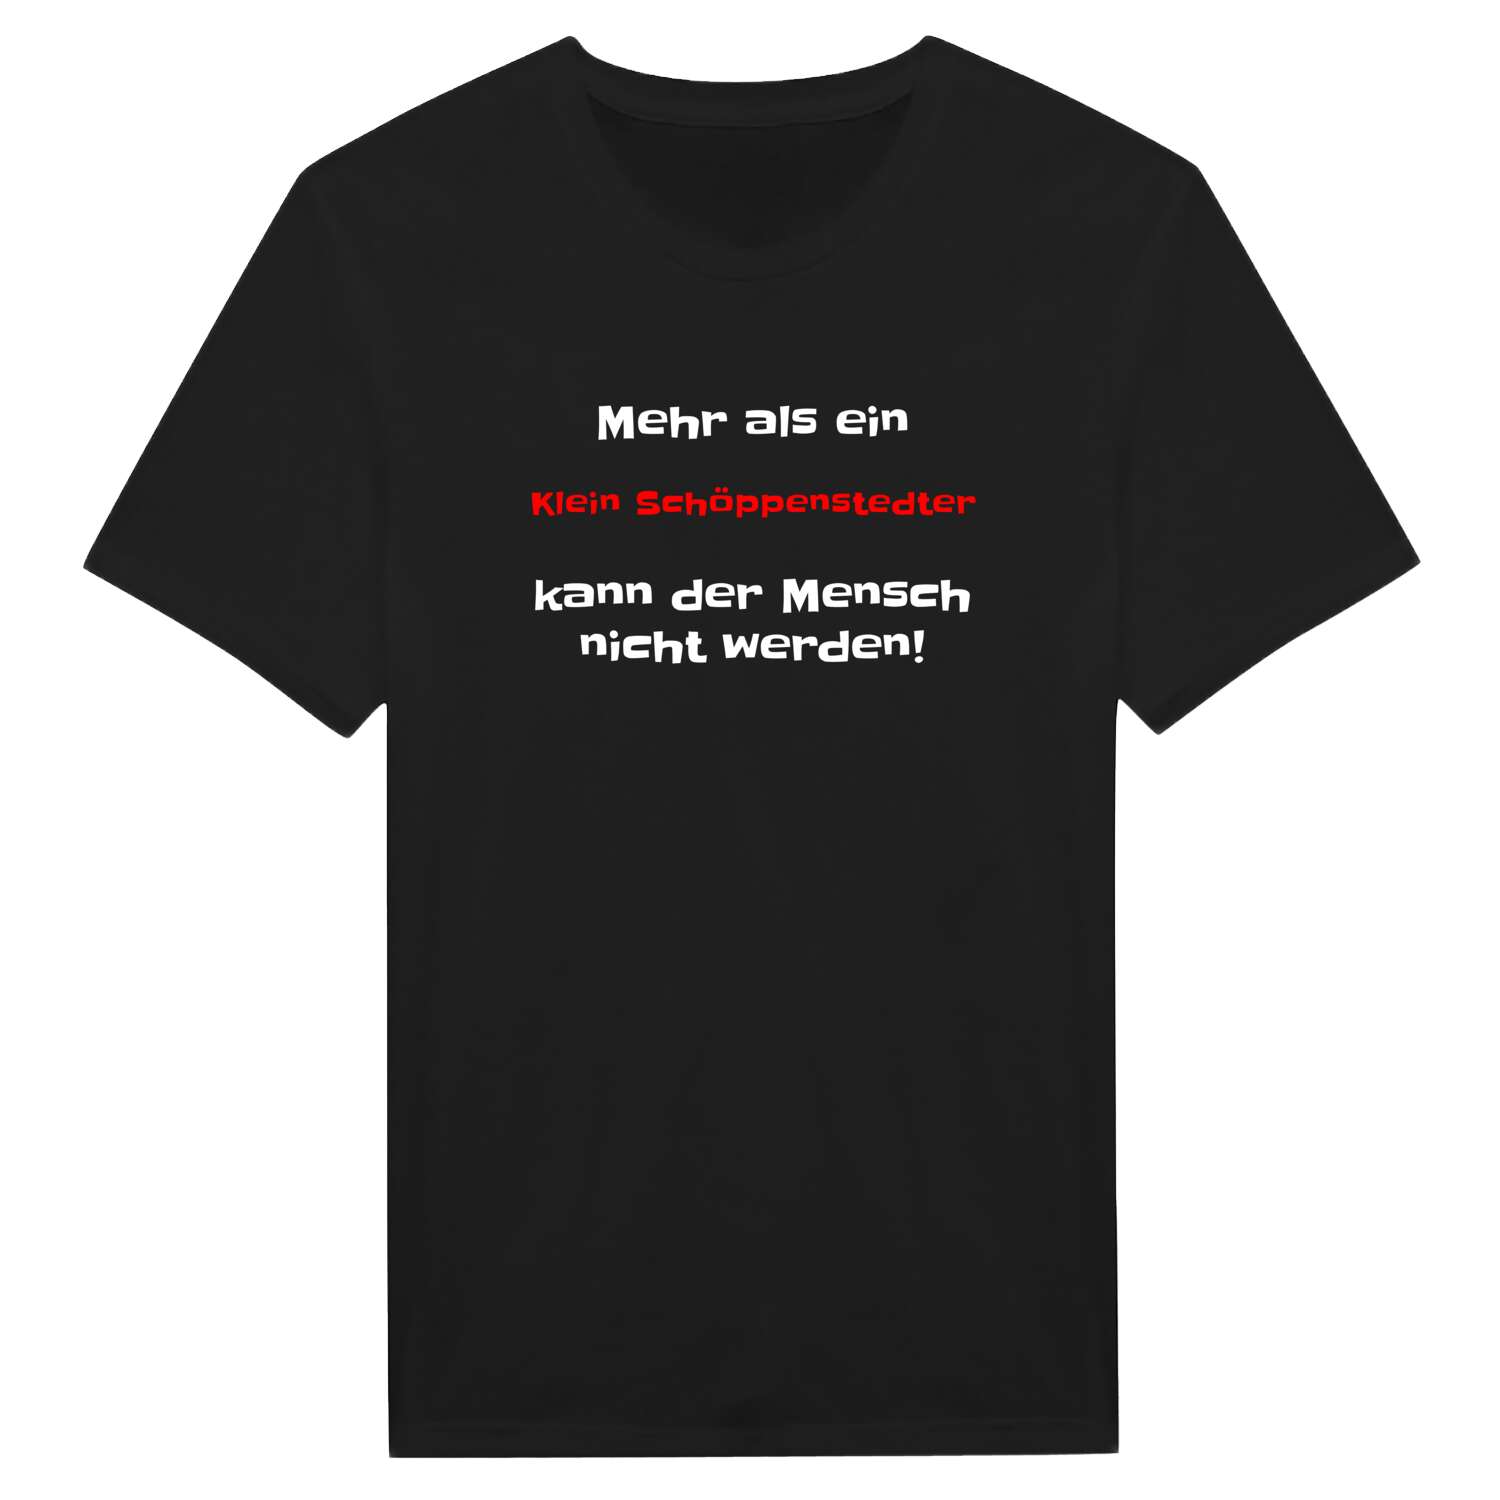 Klein Schöppenstedt T-Shirt »Mehr als ein«